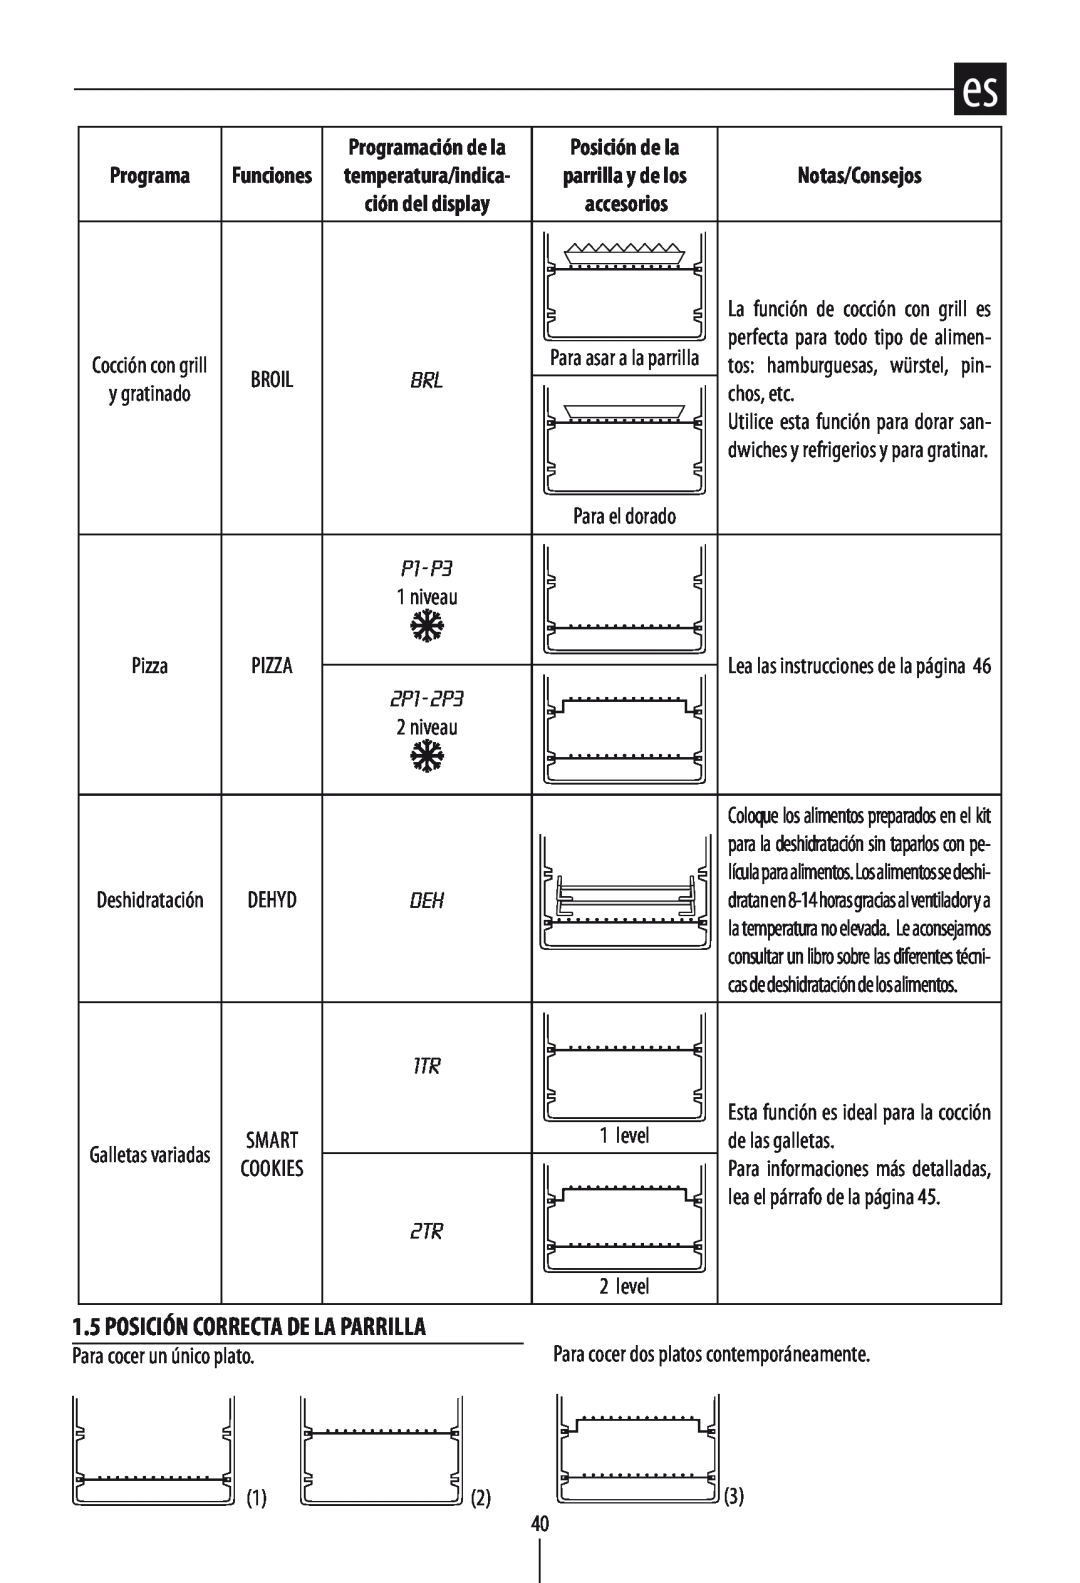 DeLonghi DO1289 manual Notas/Consejos, Posición Correcta De La Parrilla, Programación de la, Posición de la, Funciones 